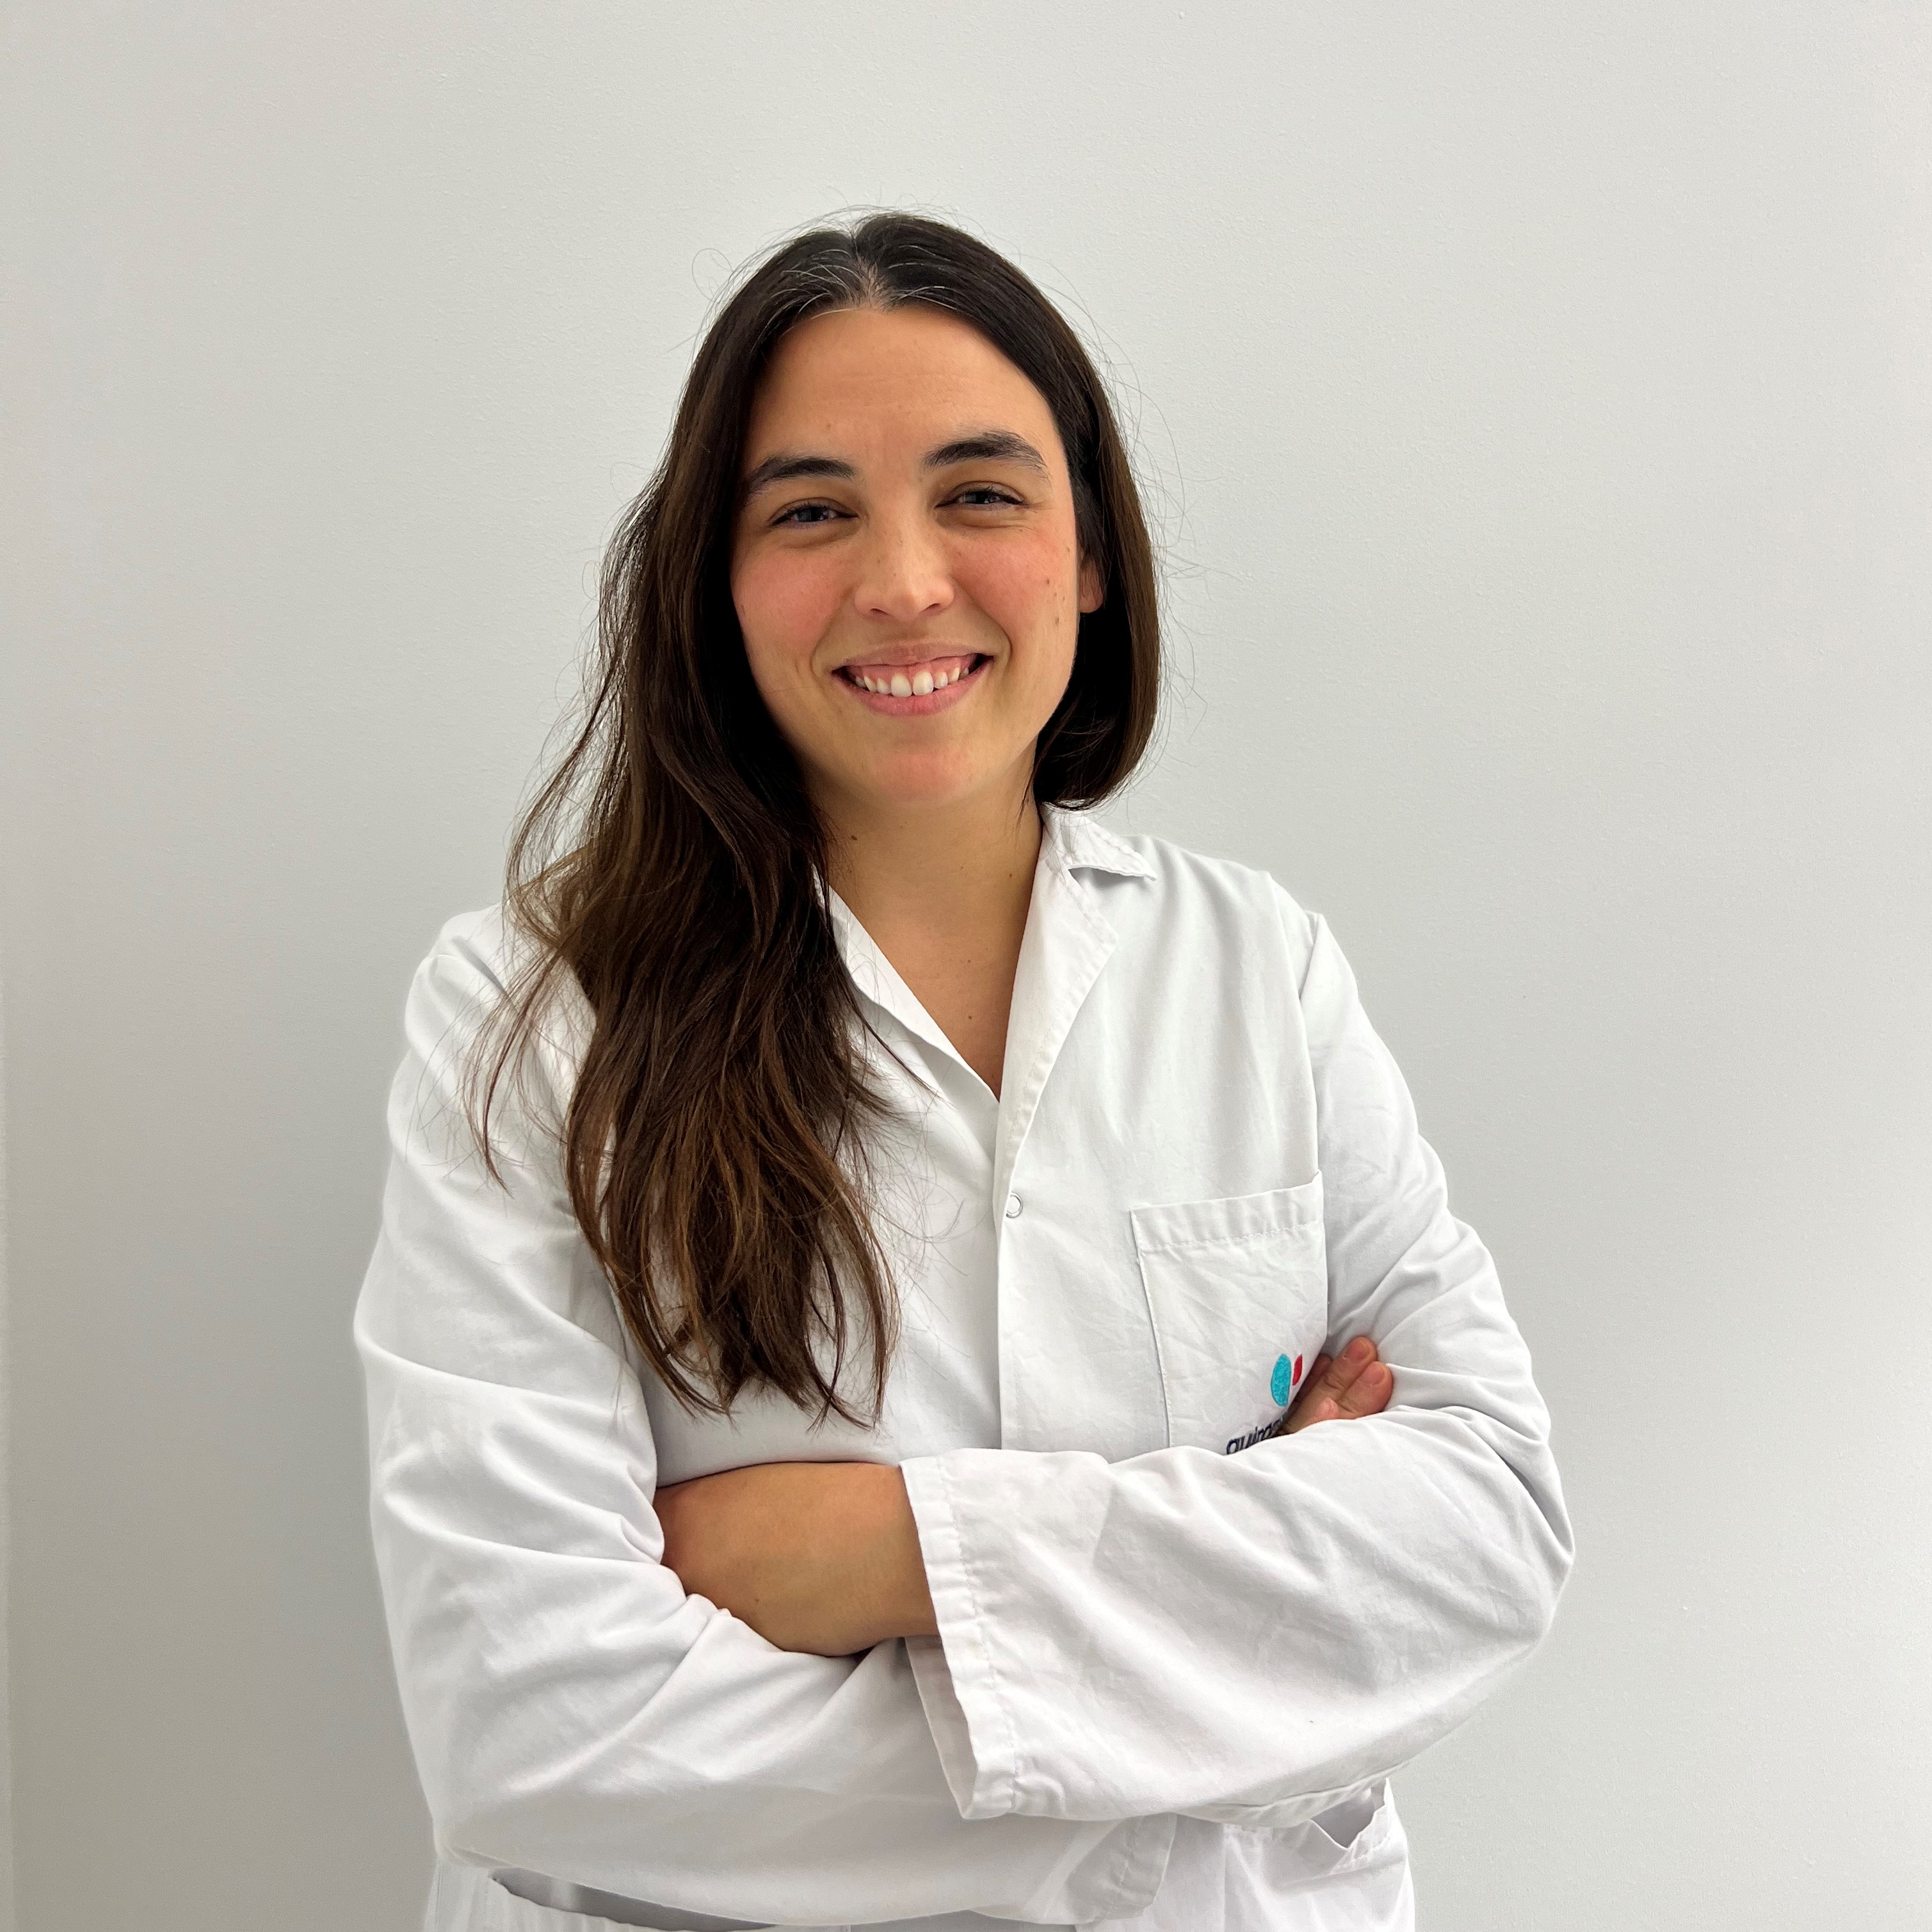 Dra. María Elena López Díez. Traumatología y Cirugía Ortopédica, Hospital Quirónsalud Vitoria